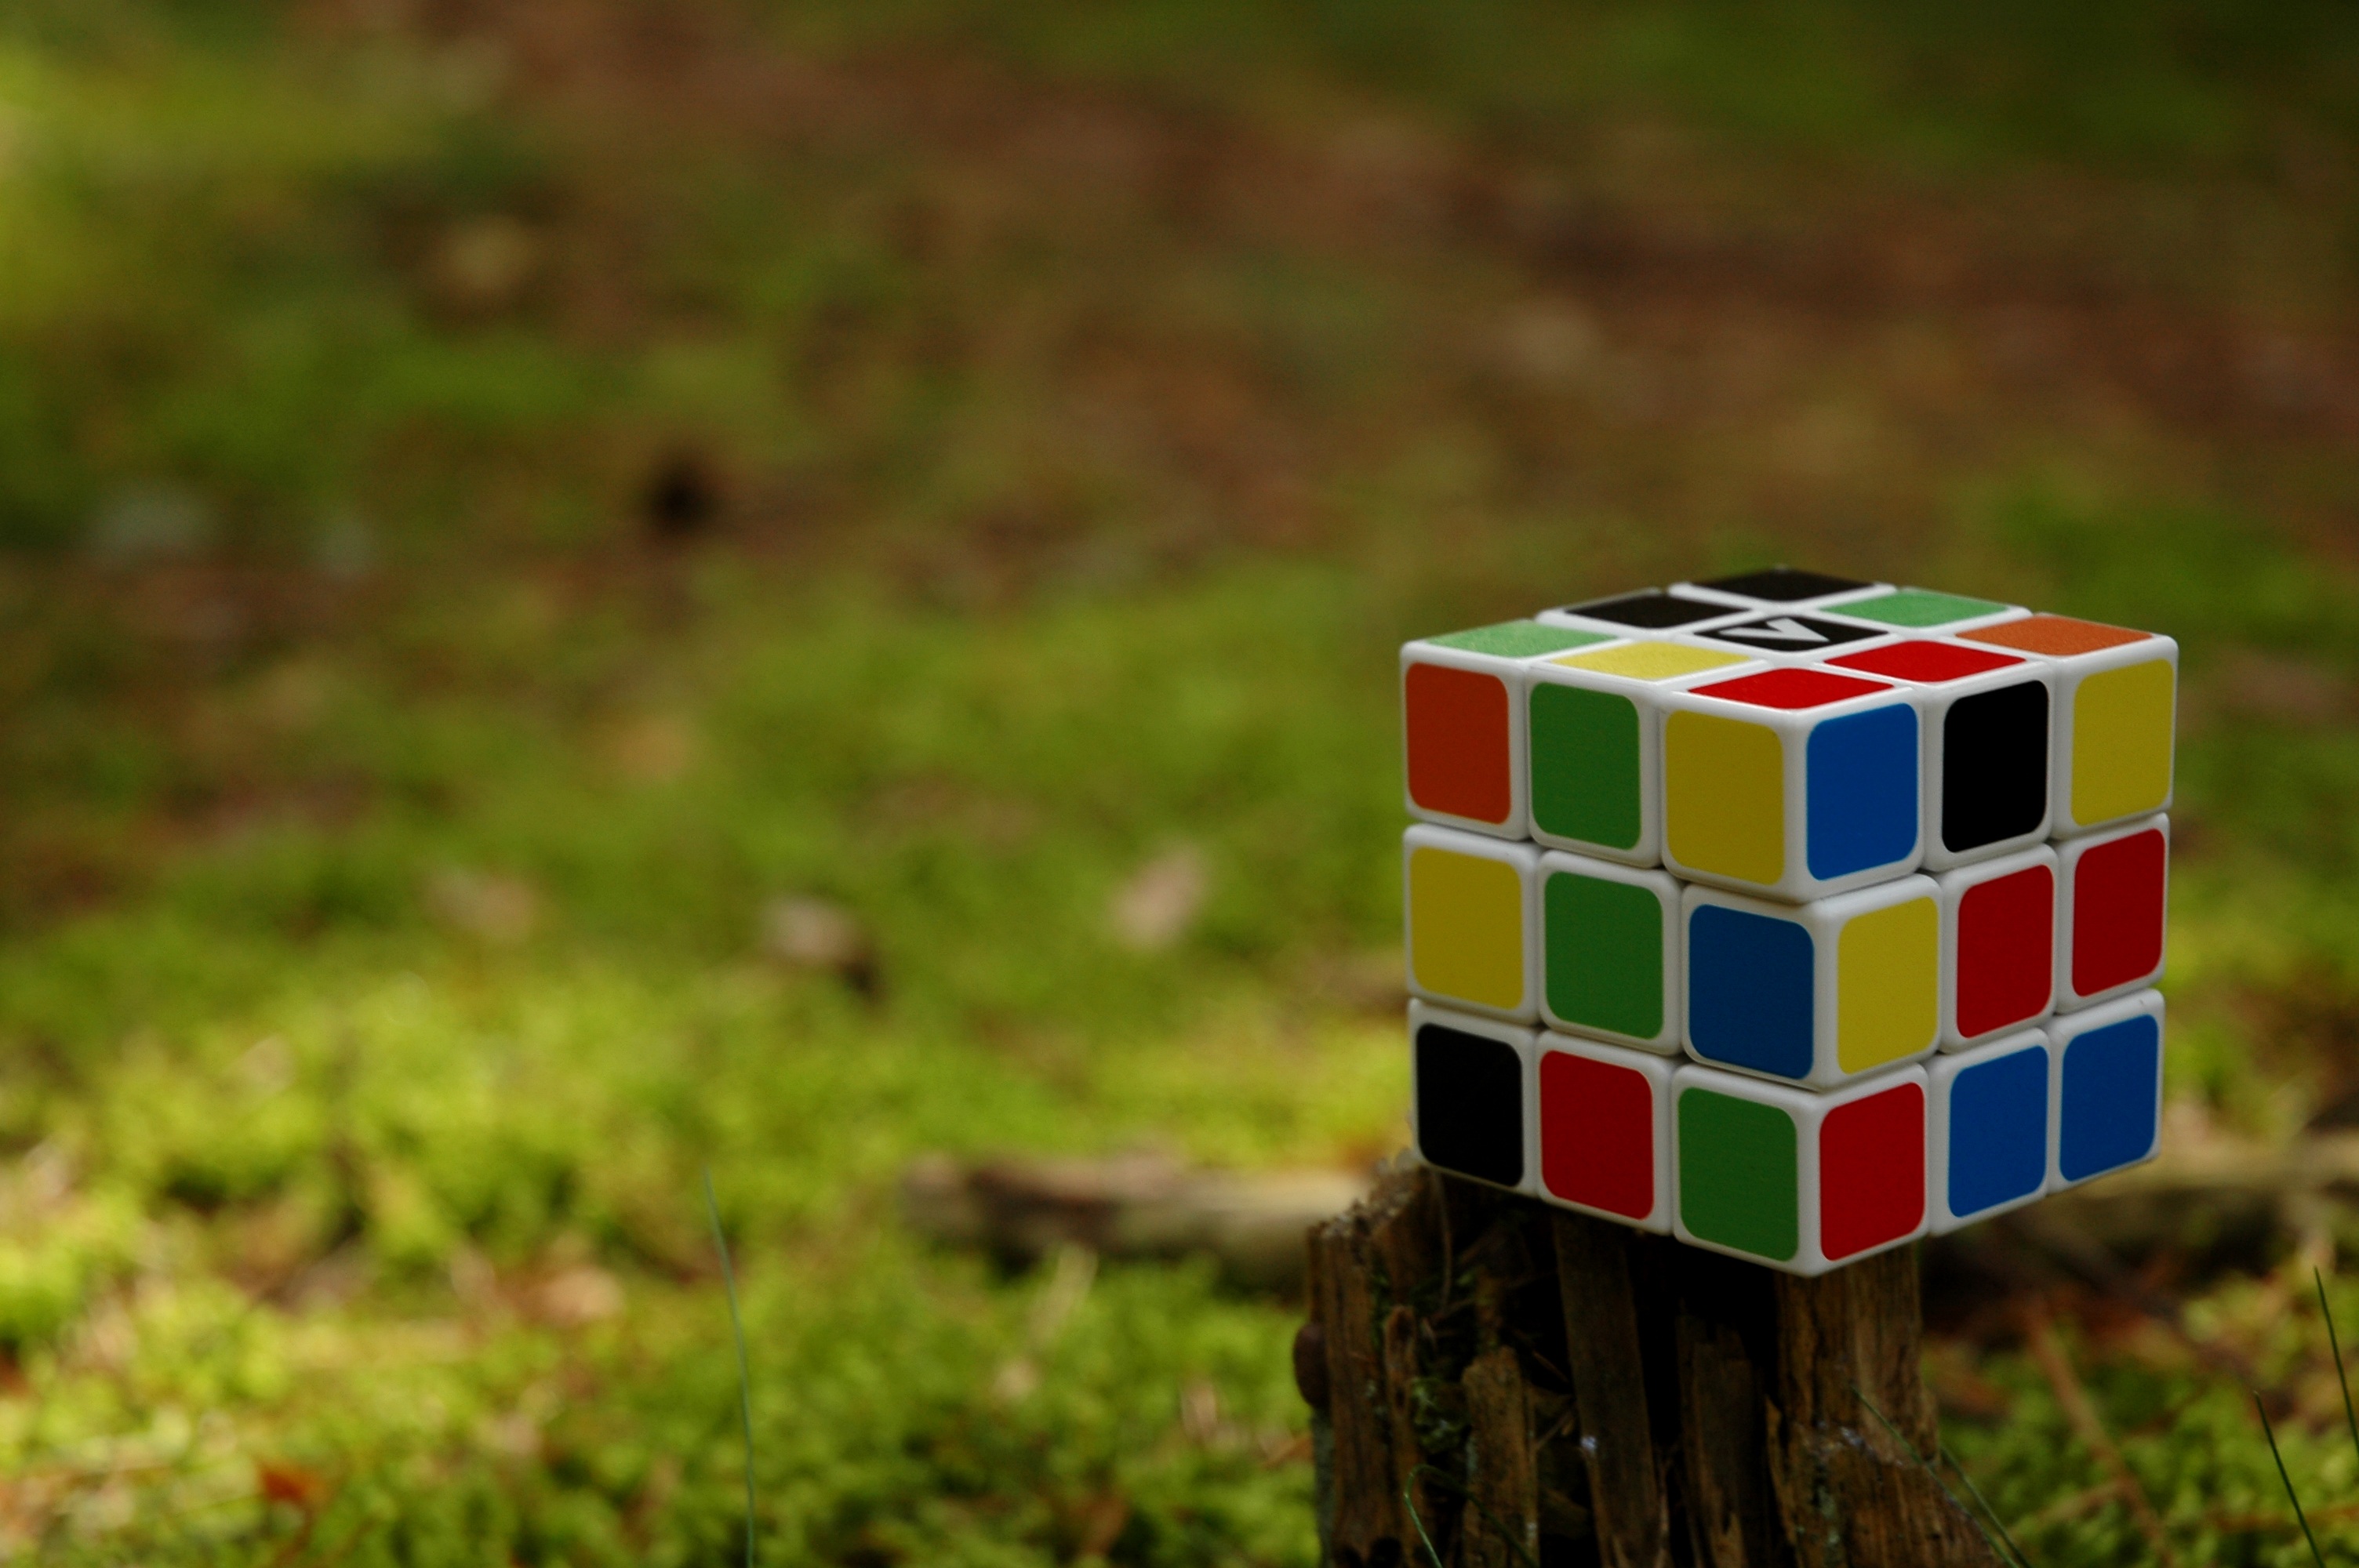 Скачать обои бесплатно Кубик Рубика, Головоломка, Разноцветный, Куб, Разное картинка на рабочий стол ПК